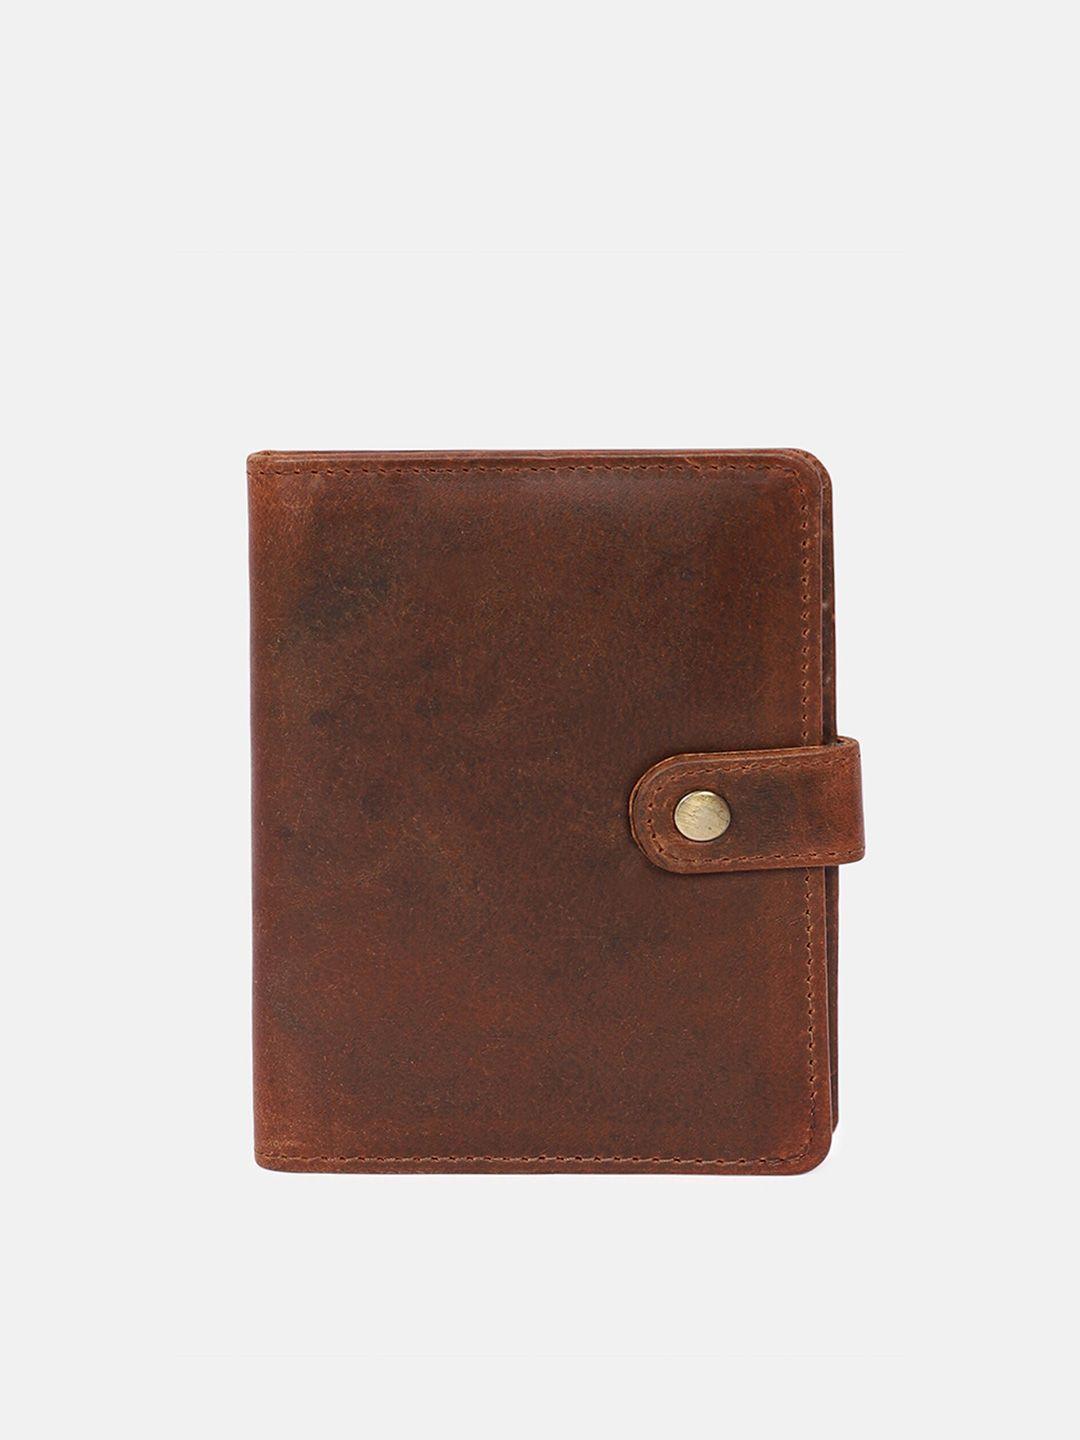 samtroh brown leather passport holder with passport holder